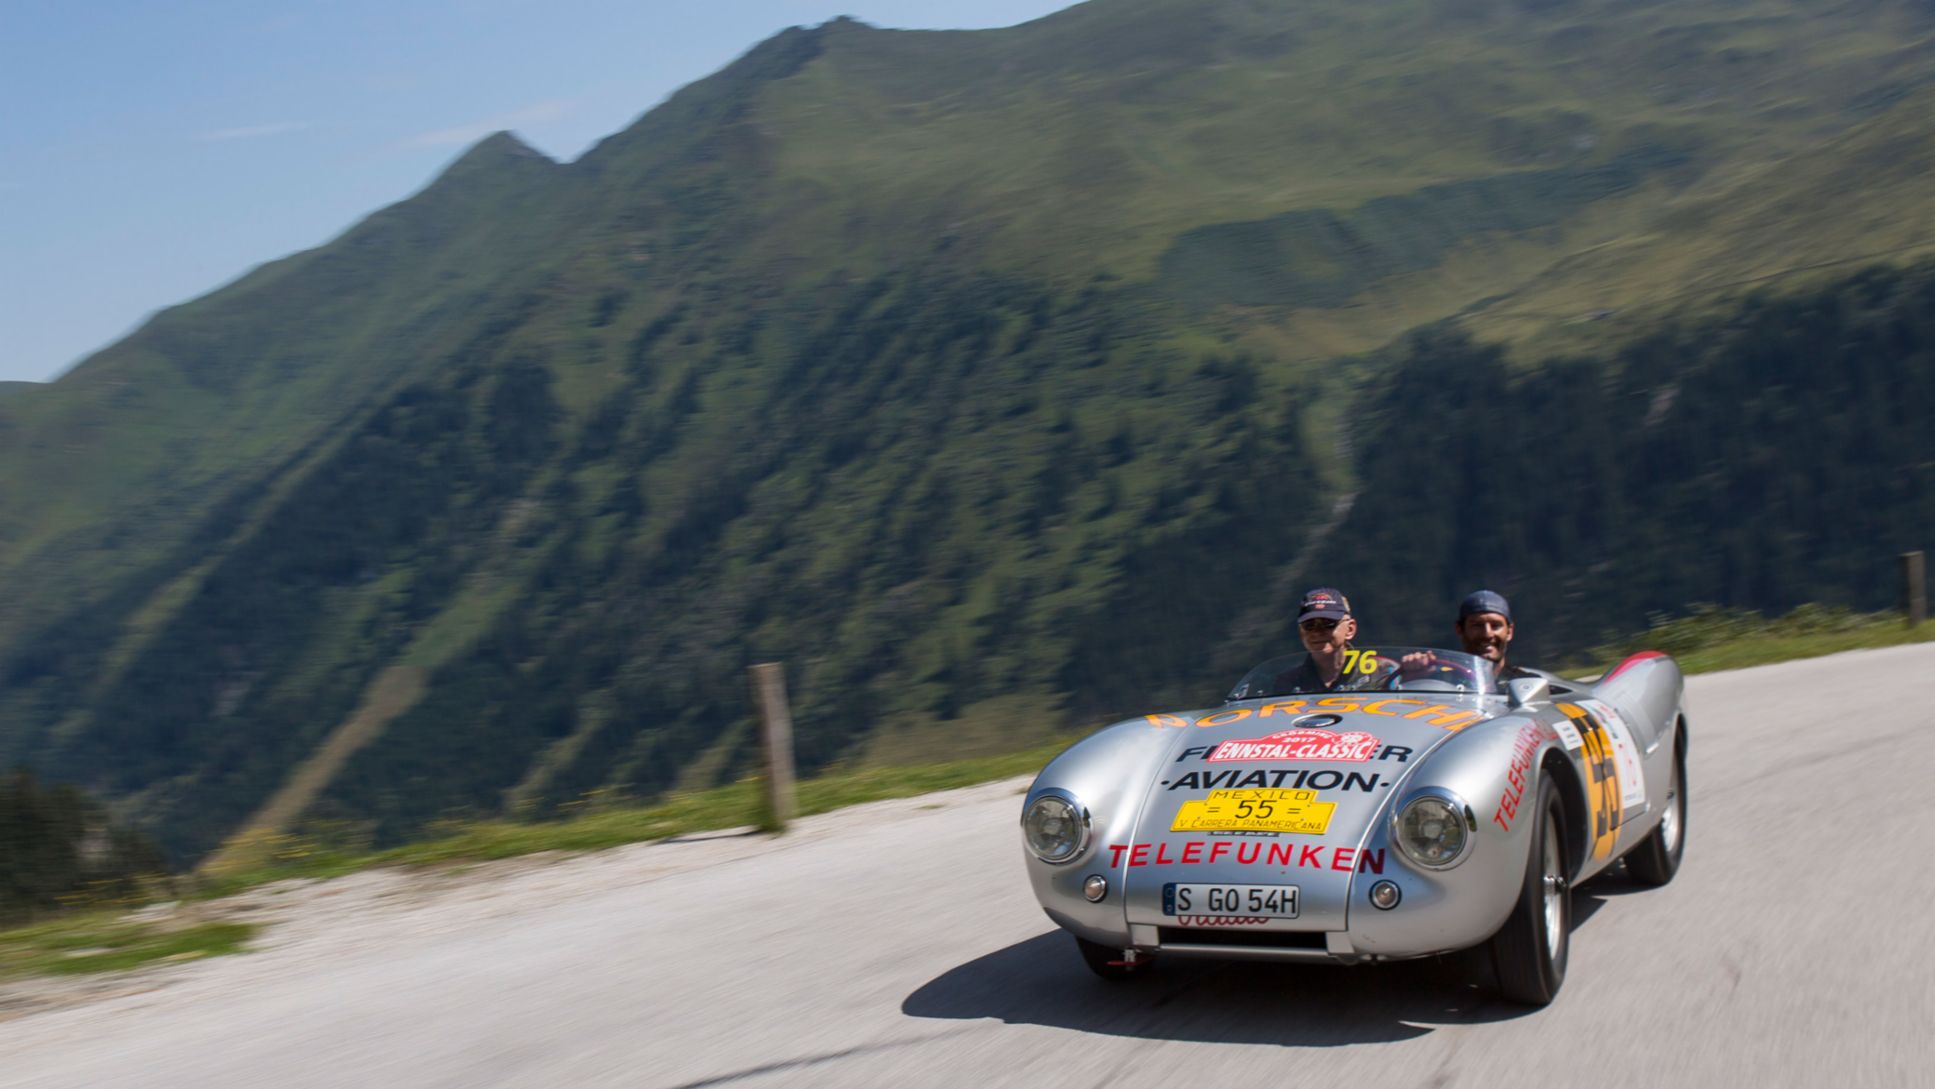 Mark Webber, Porsche Brand Ambassador (r), 550 Spyder from 1954, Ennstal Classic, 07/20/2017, Porsche AG